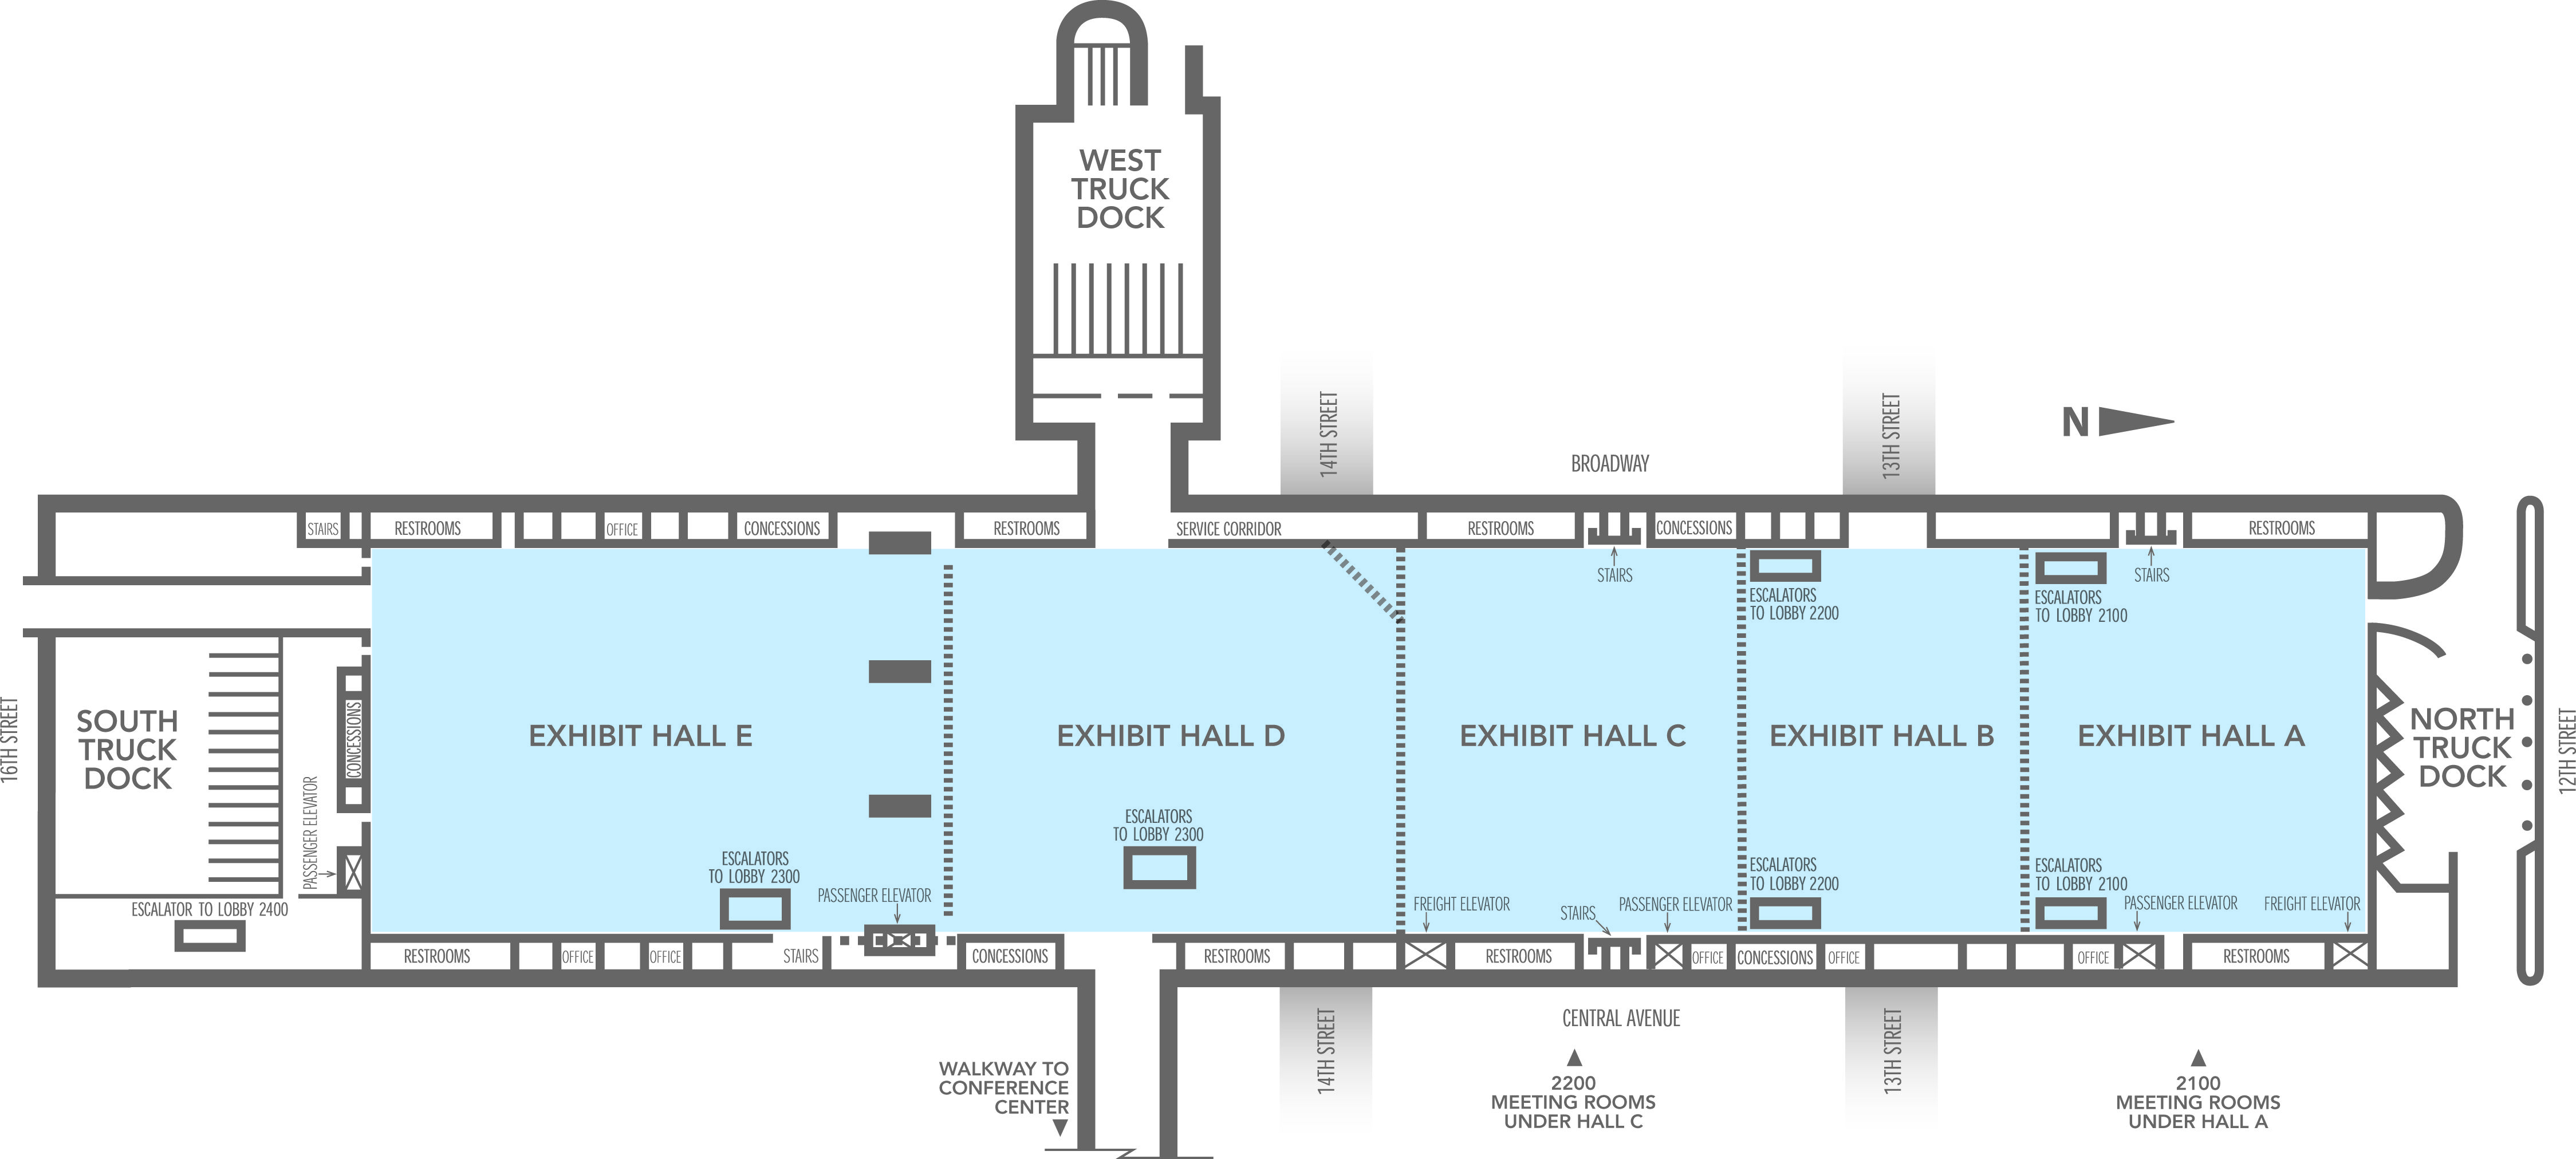 Bartle Exhibit Hall (A - E) - Kansas City Convention Center